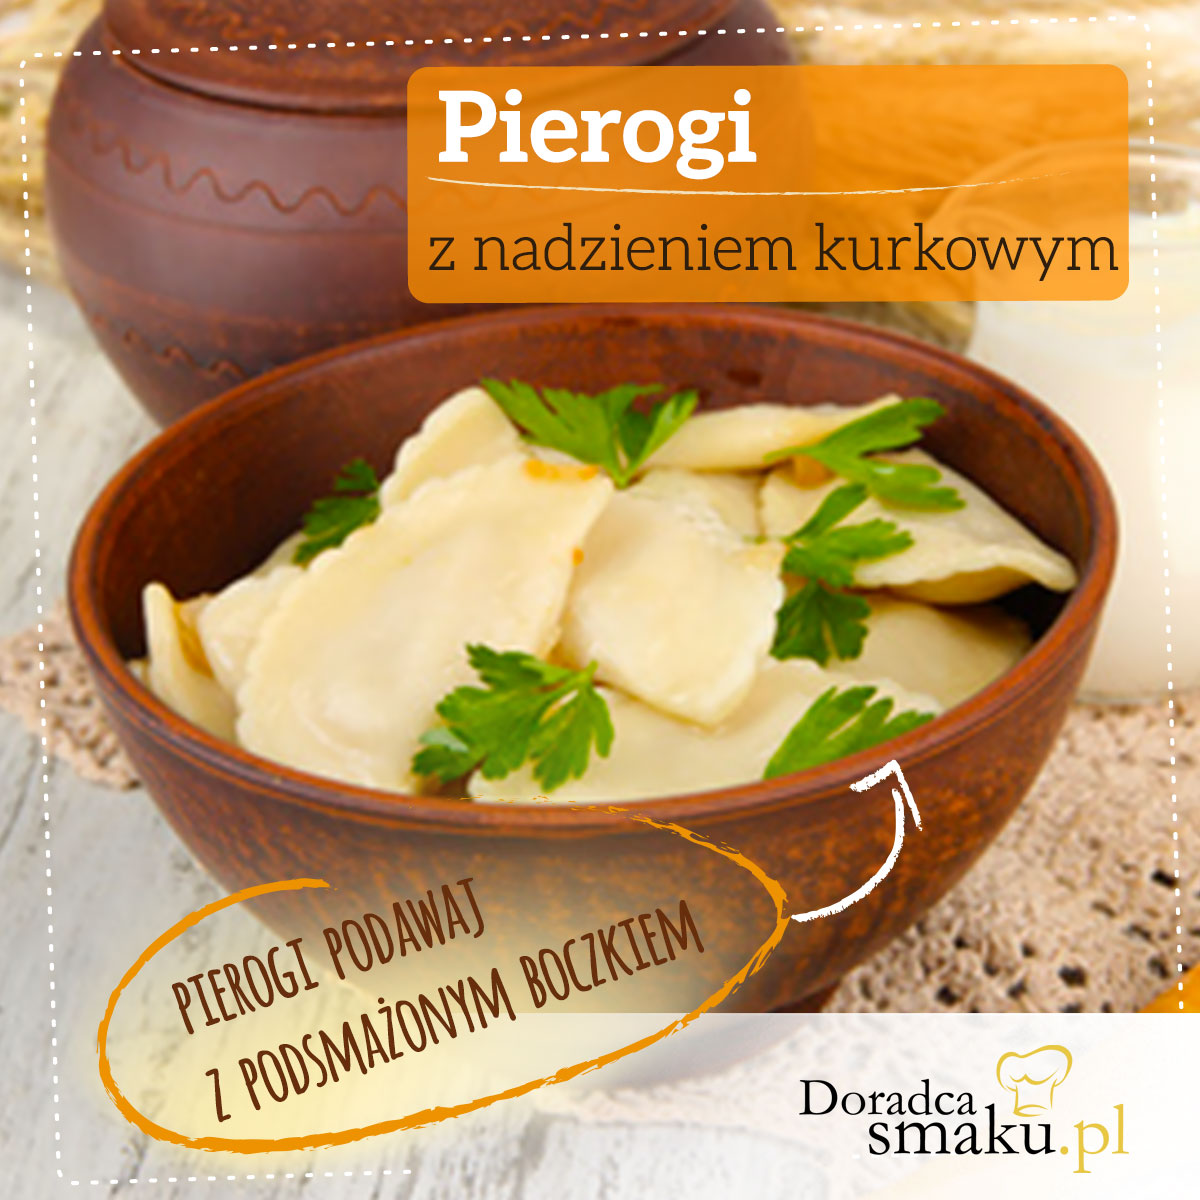 Pierogi, smaczne danie kuchni polskiej